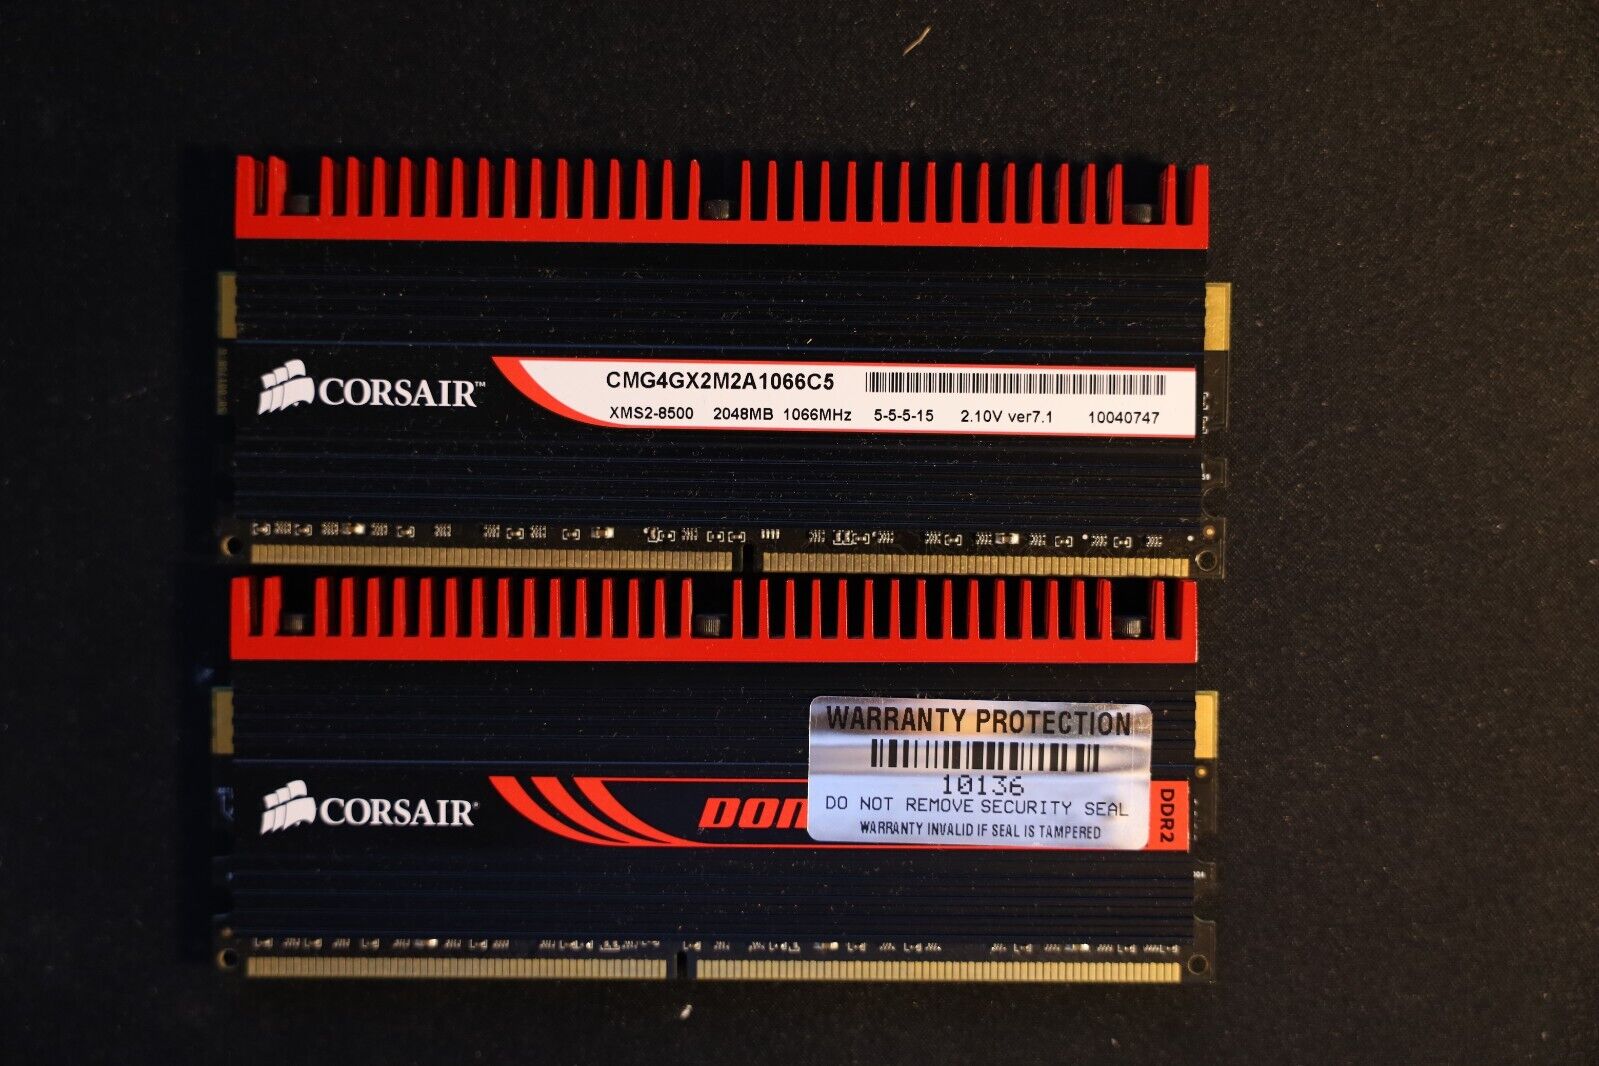 CORSAIR DOMINATOR GT 4GB (2 x 2GB) DDR2 1066 (PC2 8500) CMG4GX2M2A1066C5